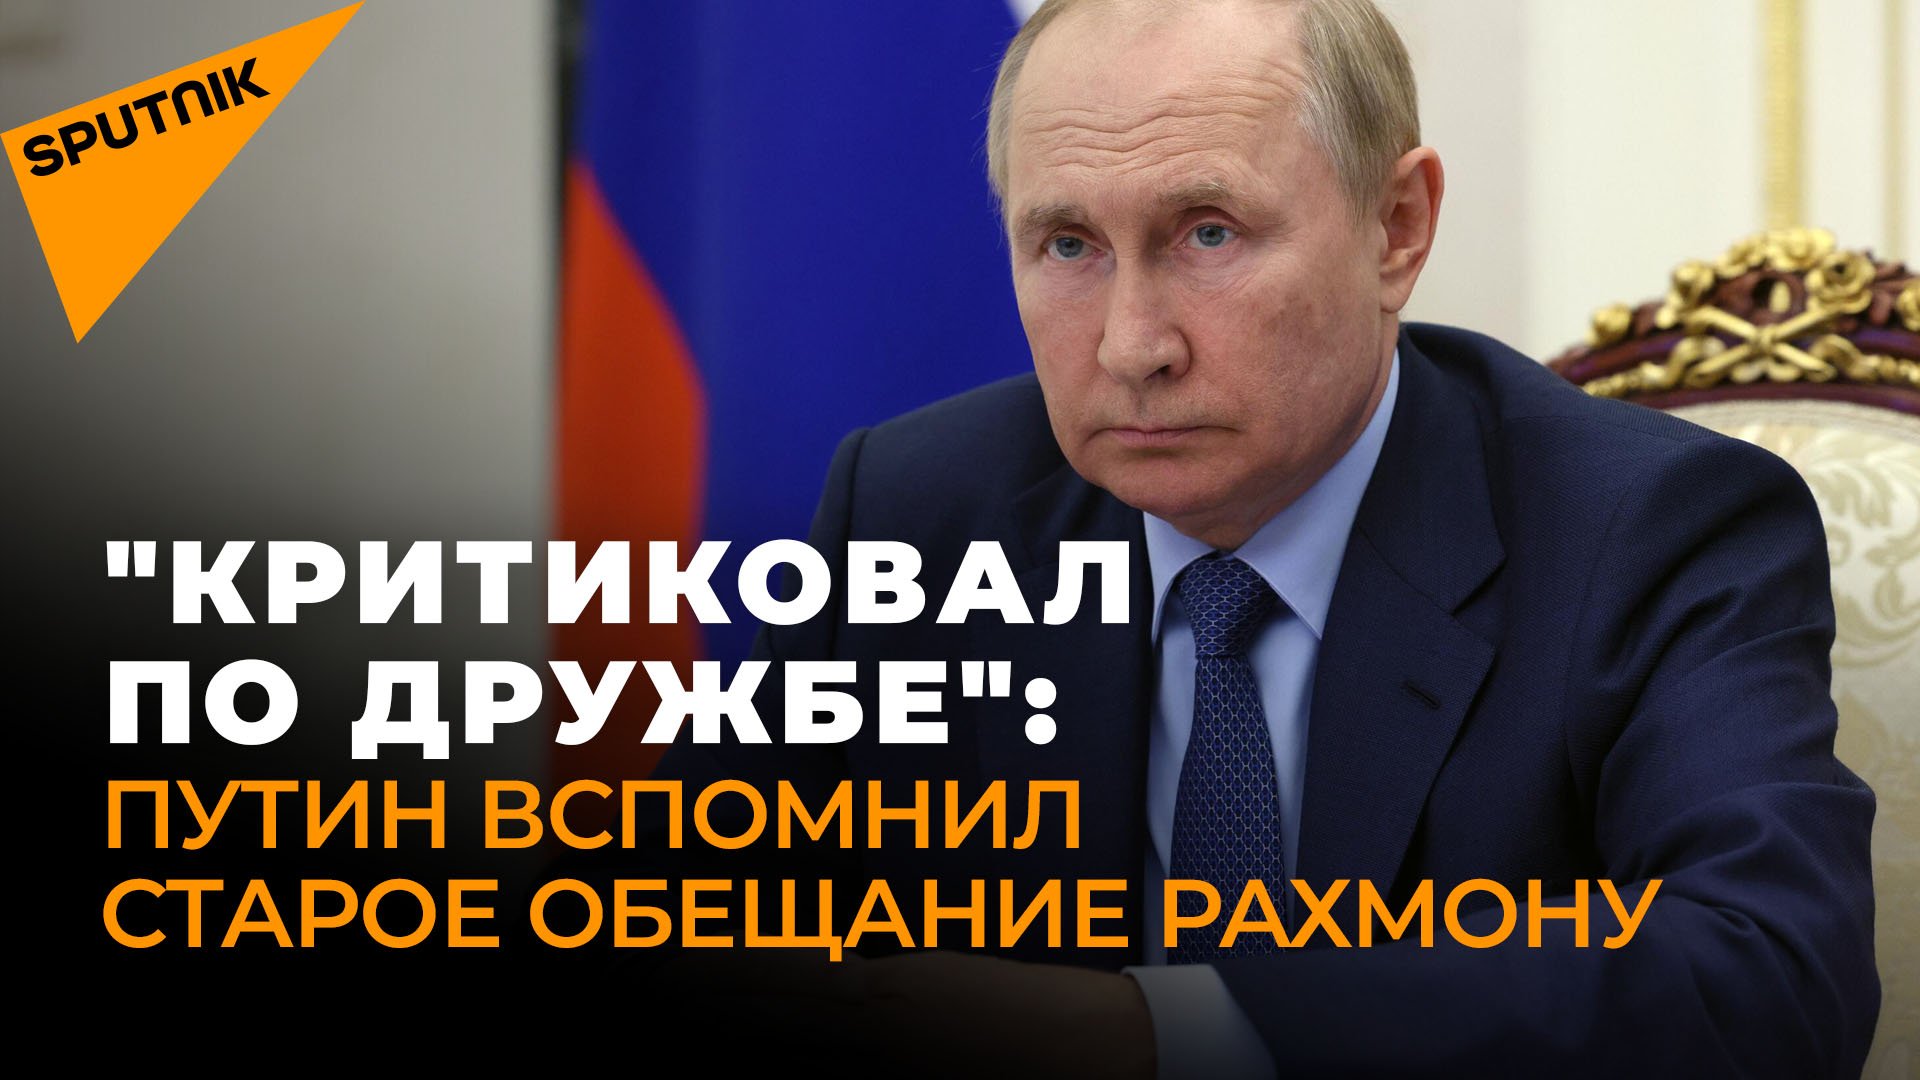 "Критиковал по дружбе": Путин вспомнил старое обещание Рахмону